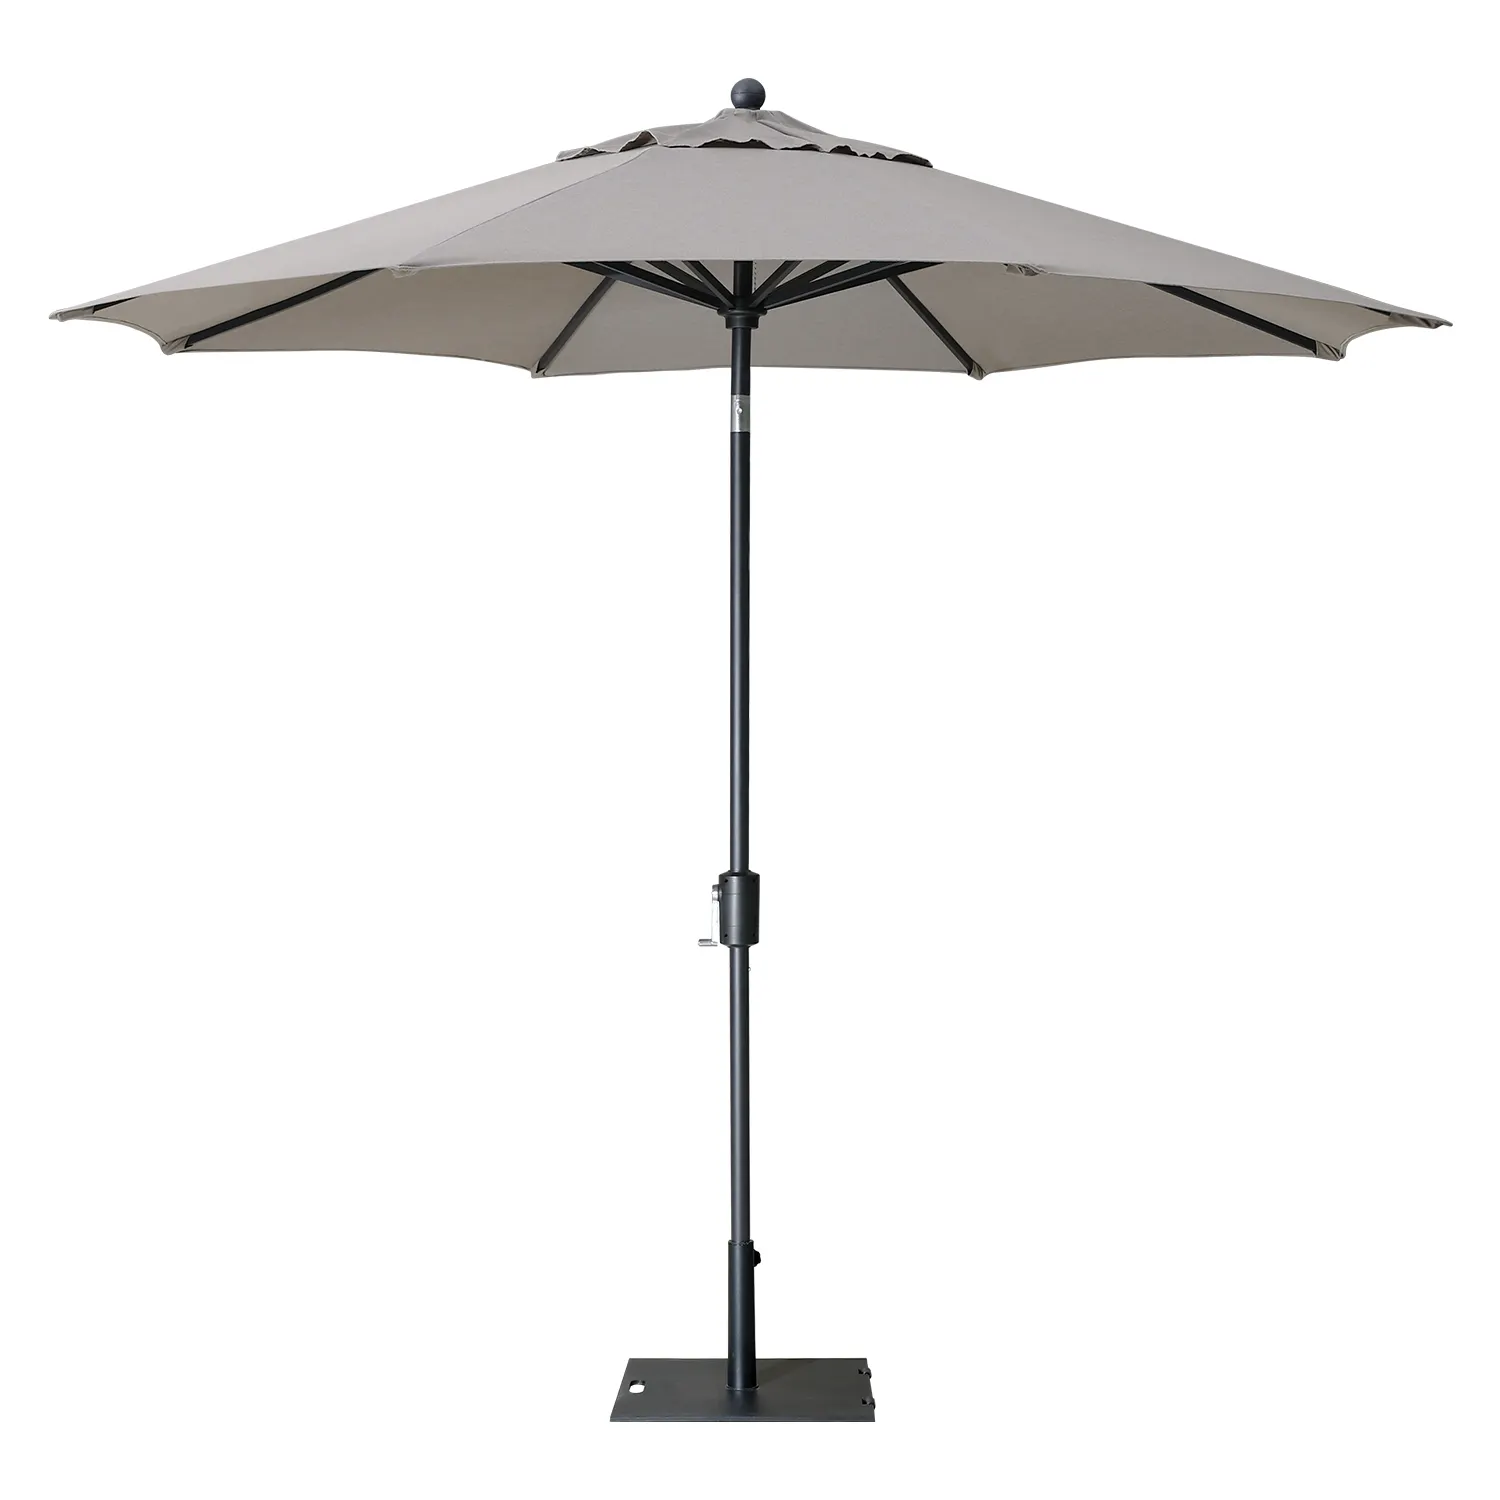 Zentrale Beschaffung verfügbar Boho Großhandel Garten Patio Base Sonnenschirm Regenschirm Modern Outdoor Sun shade